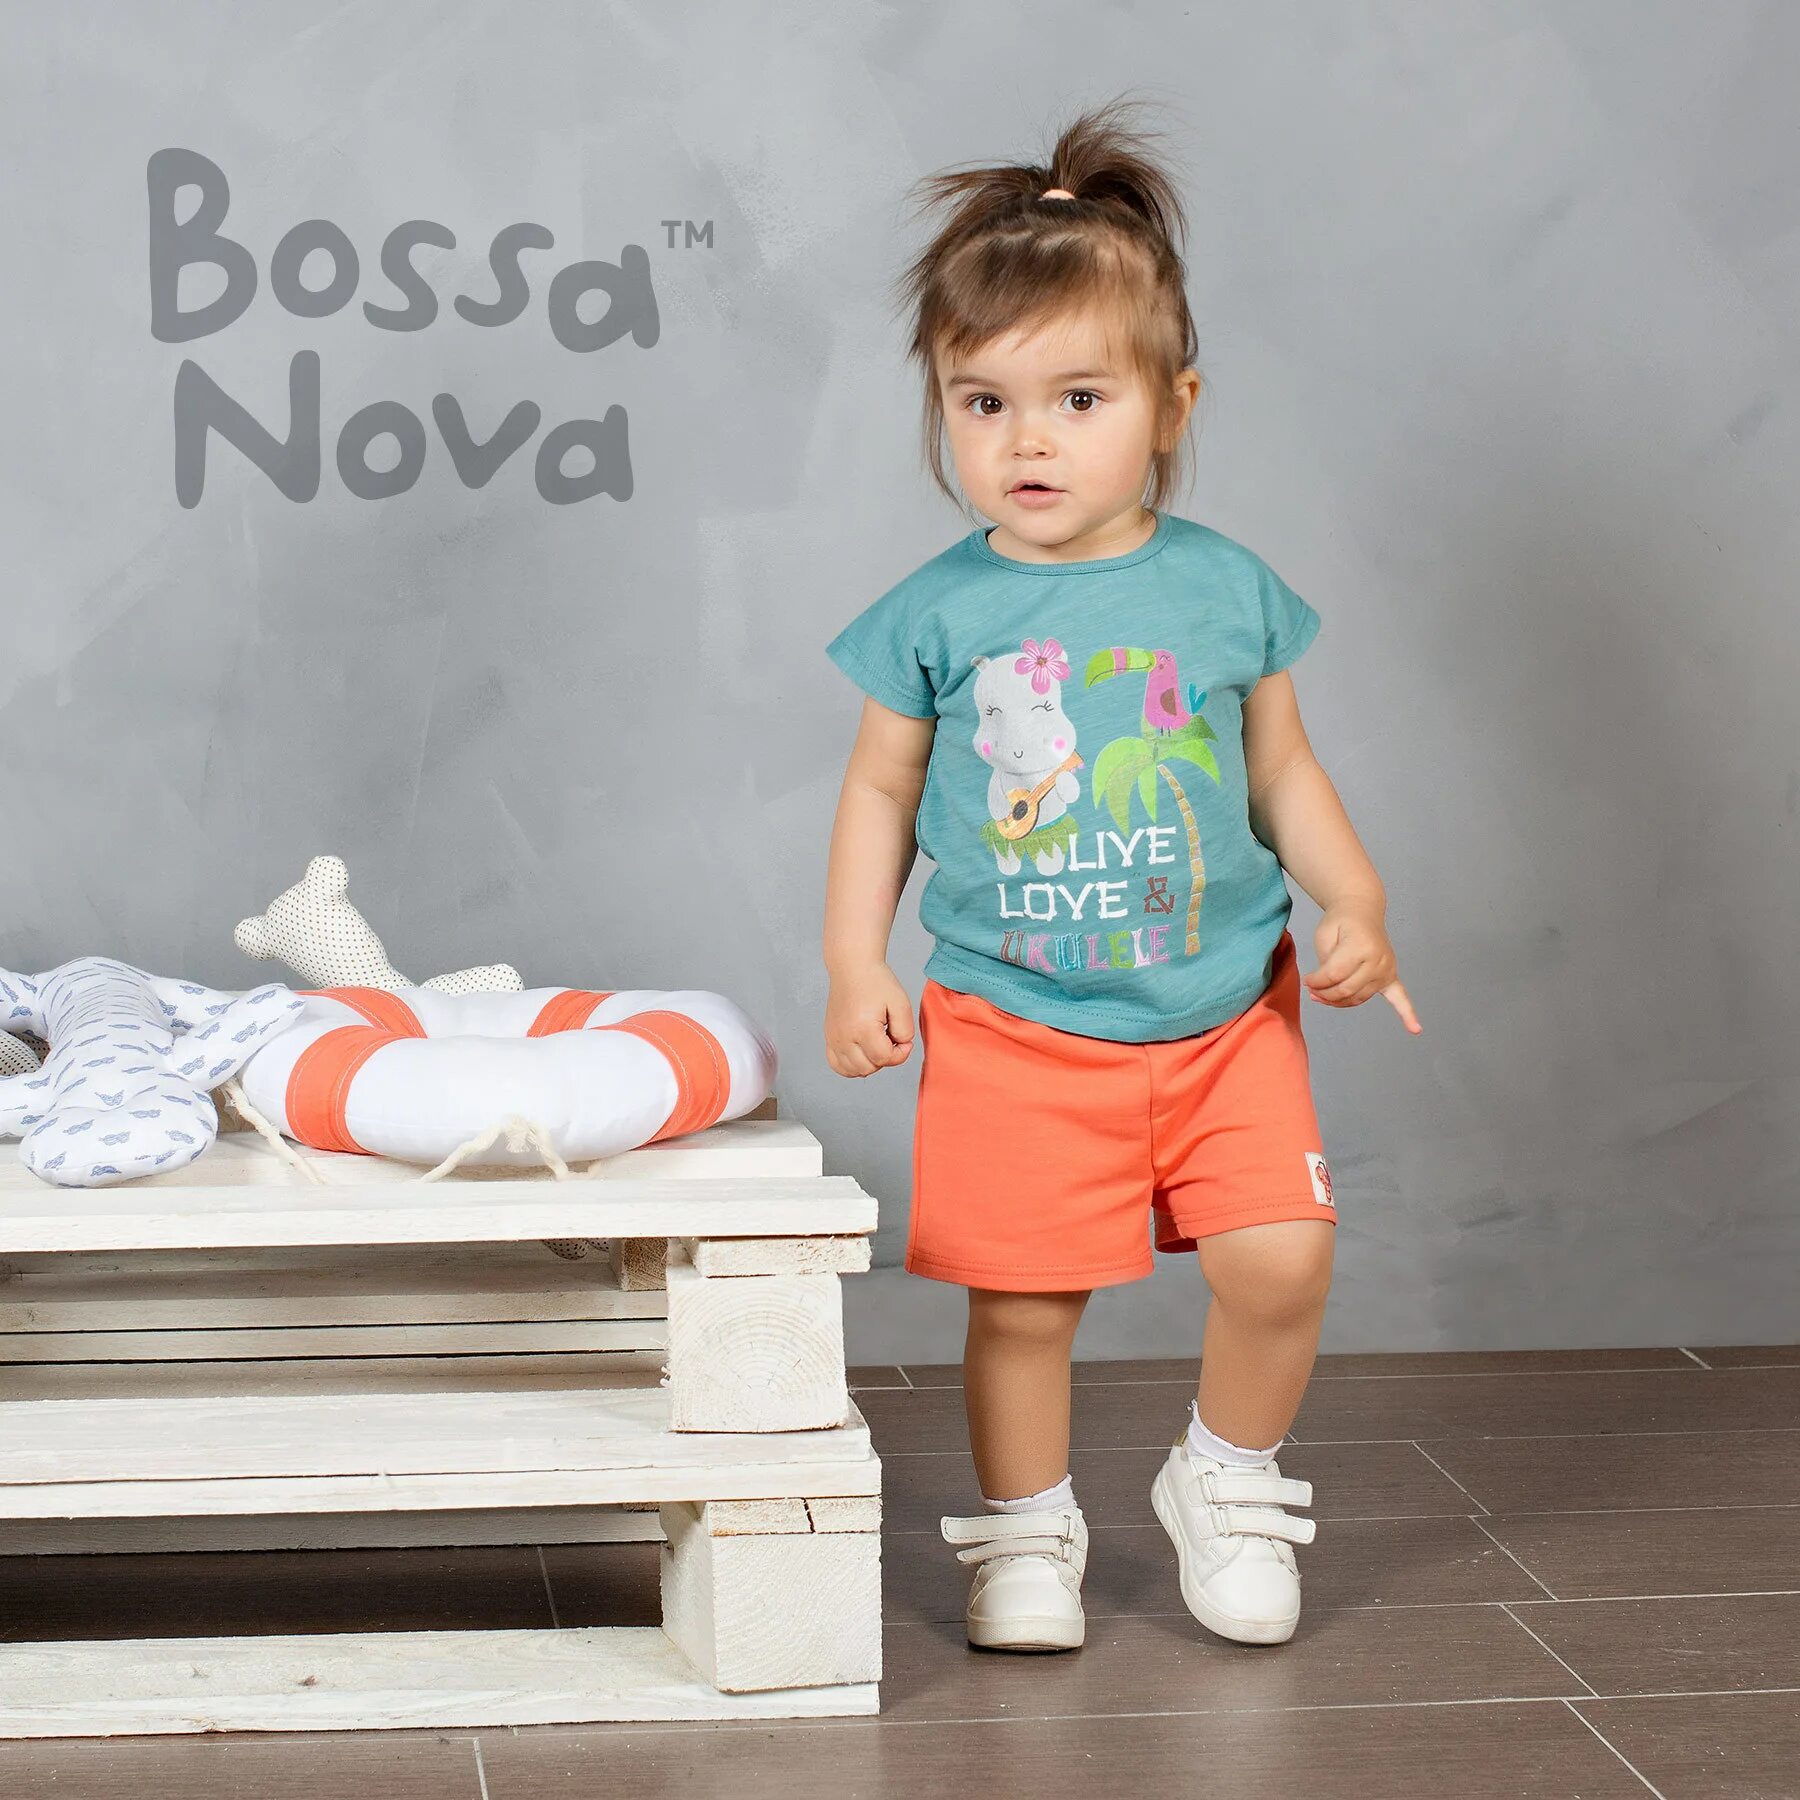 Bossa Nova одежда. Босанова Пятигорск. Детская одежда. Босса Нова детская одежда. Босса нова это